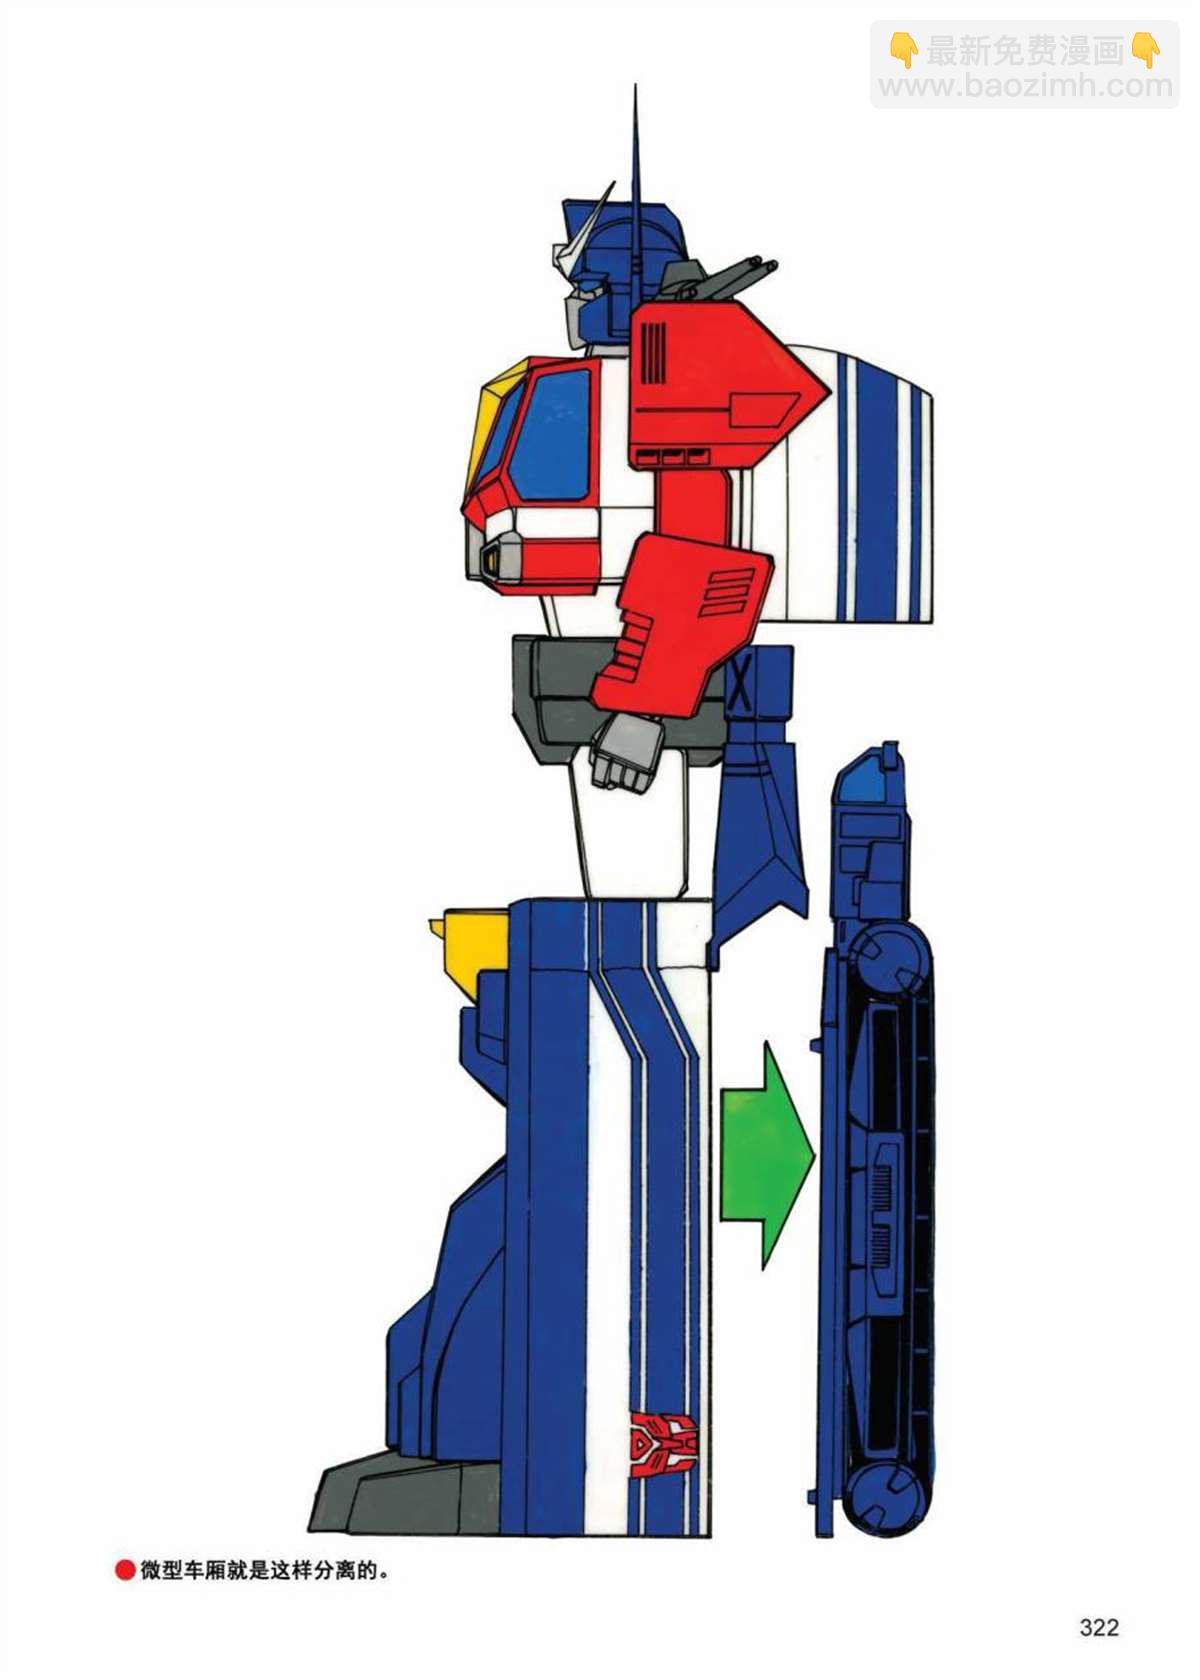 變形金剛日版G1雜誌插畫 - 《戰鬥吧！超機械生命體變形金剛：戰鬥之星》 - 3